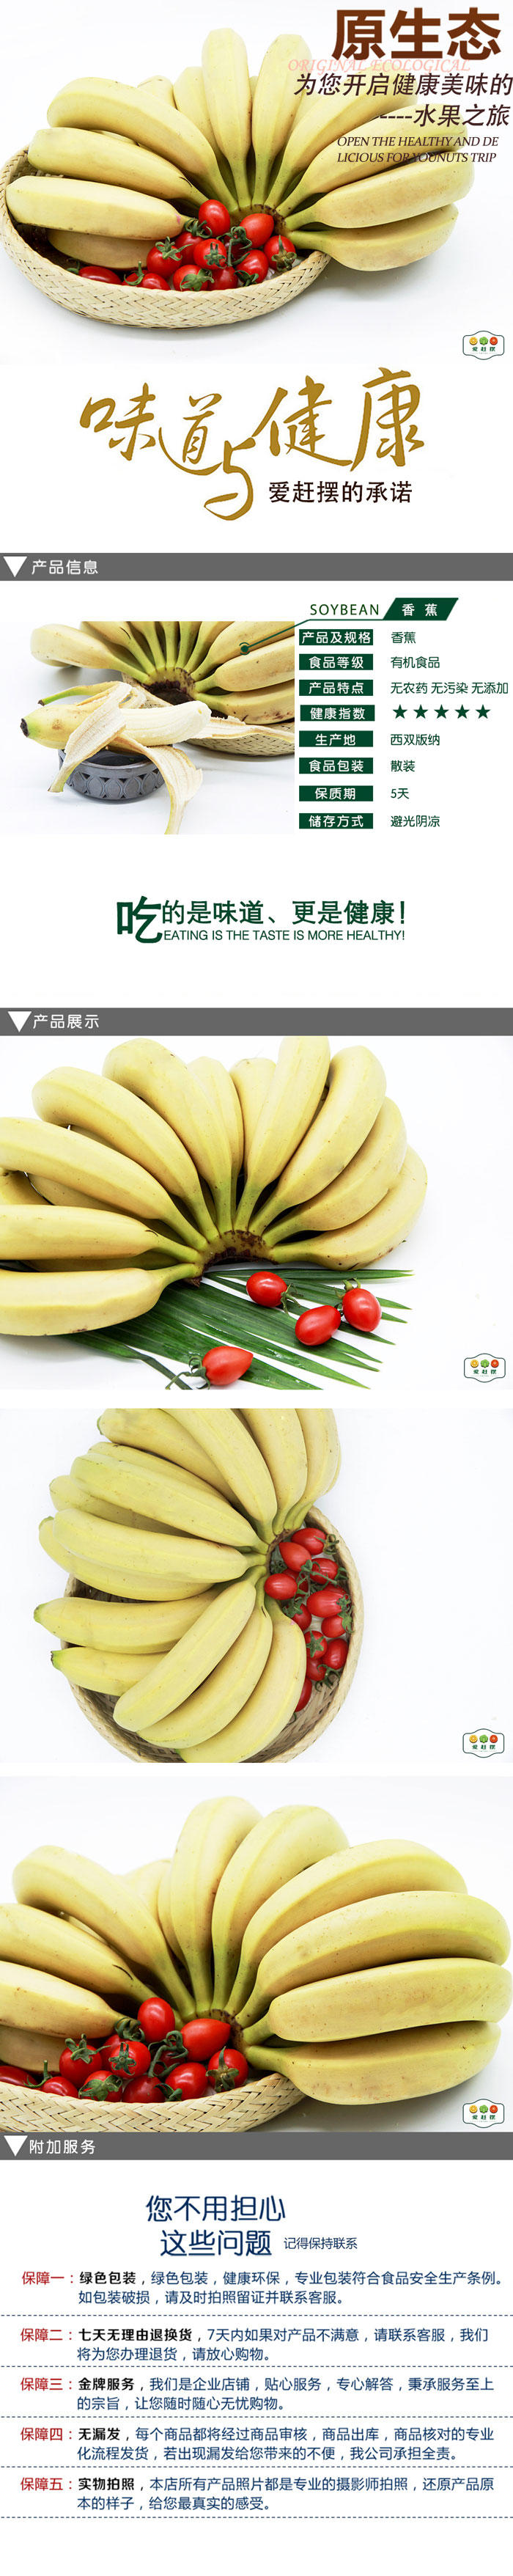 西双版纳爱赶摆生态香蕉